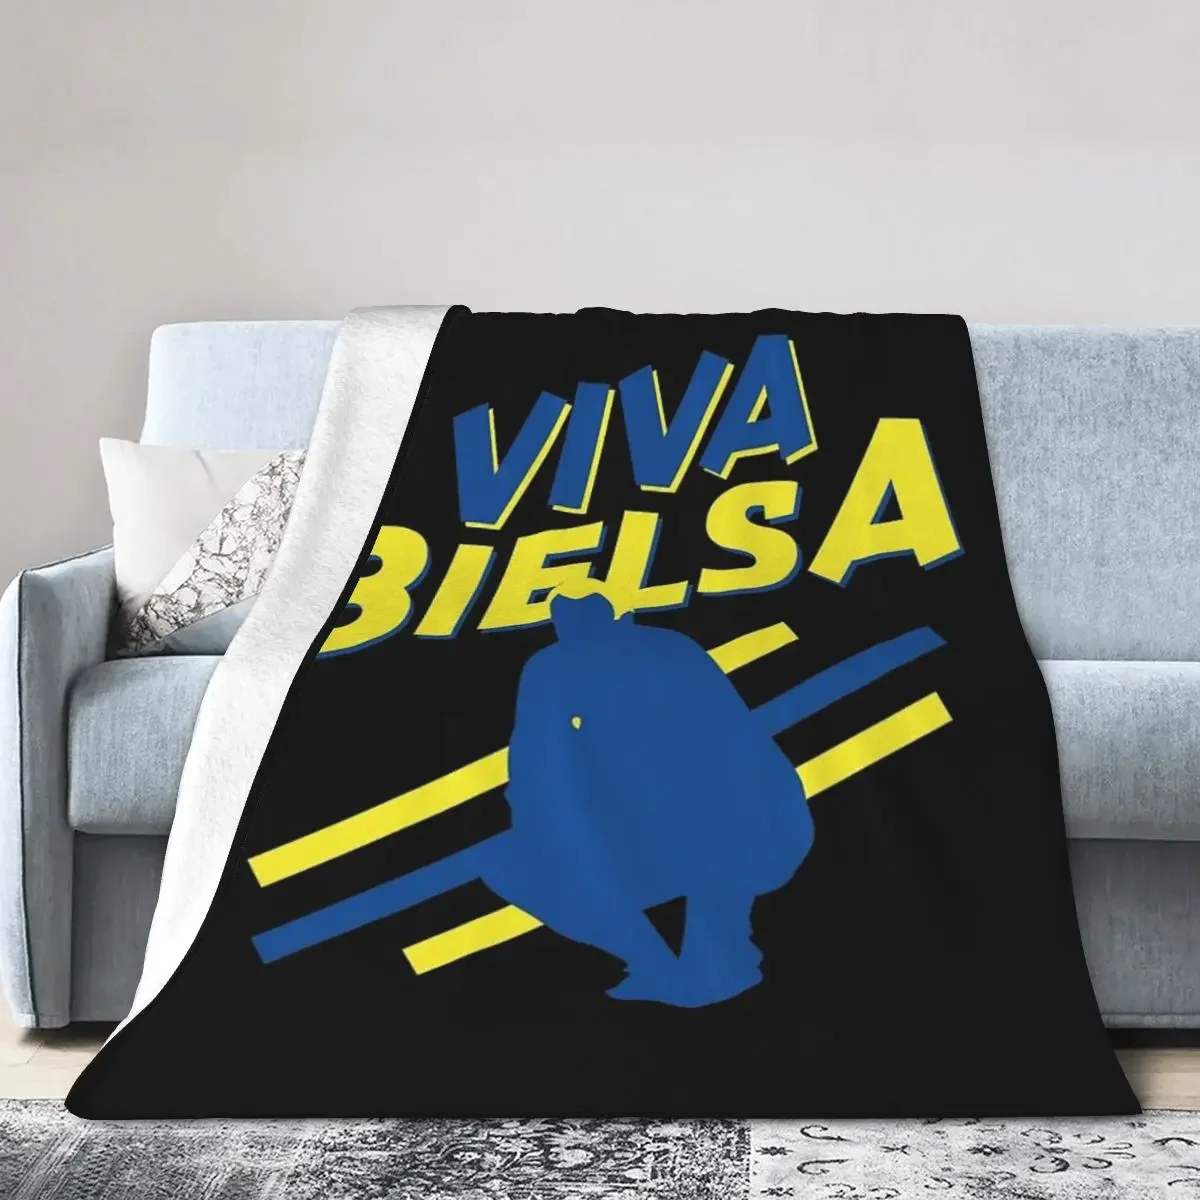 

Фланелевое Одеяло Viva Bielsa-Лидс, объединенные одеяла, мягкое постельное белье, теплое плюшевое одеяло для кровати, гостиной, пикника, путешествия, дома